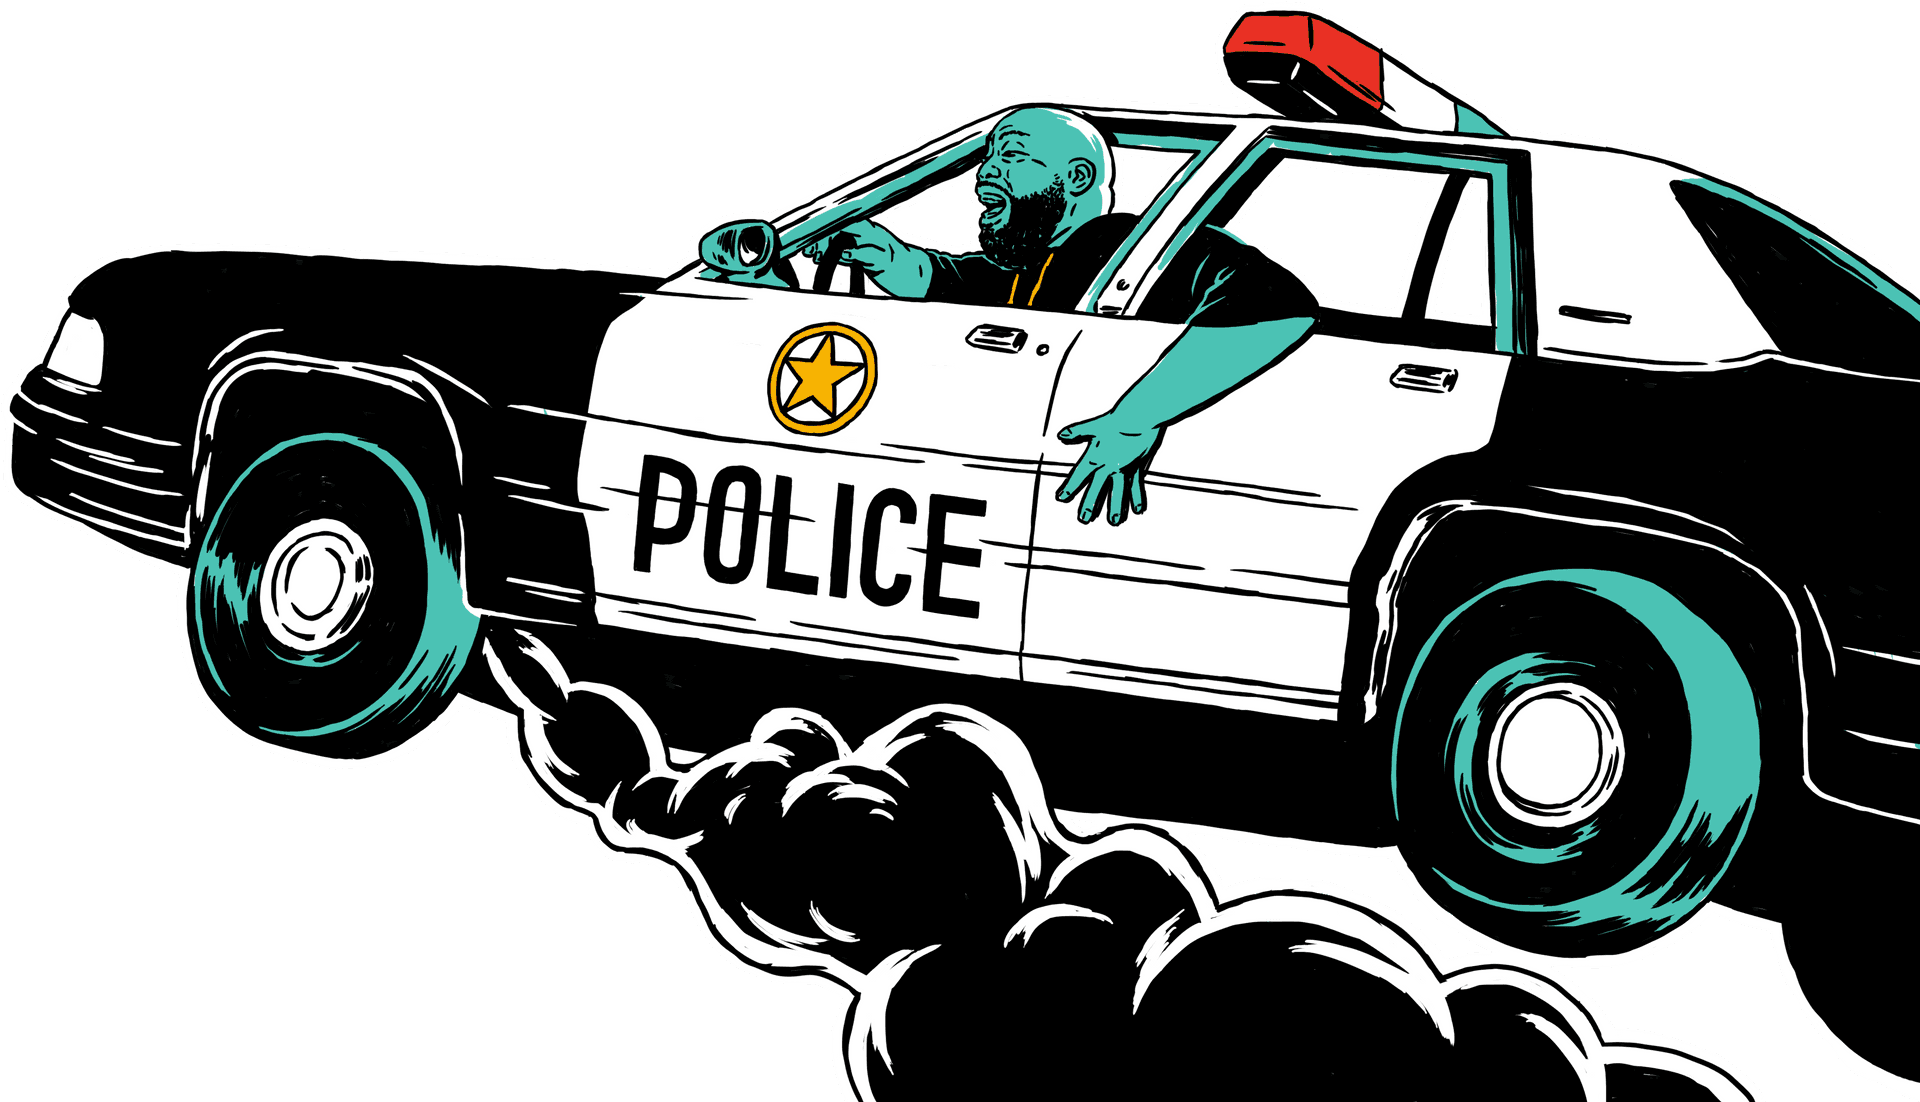 Speeding Police Car Illustration PNG image